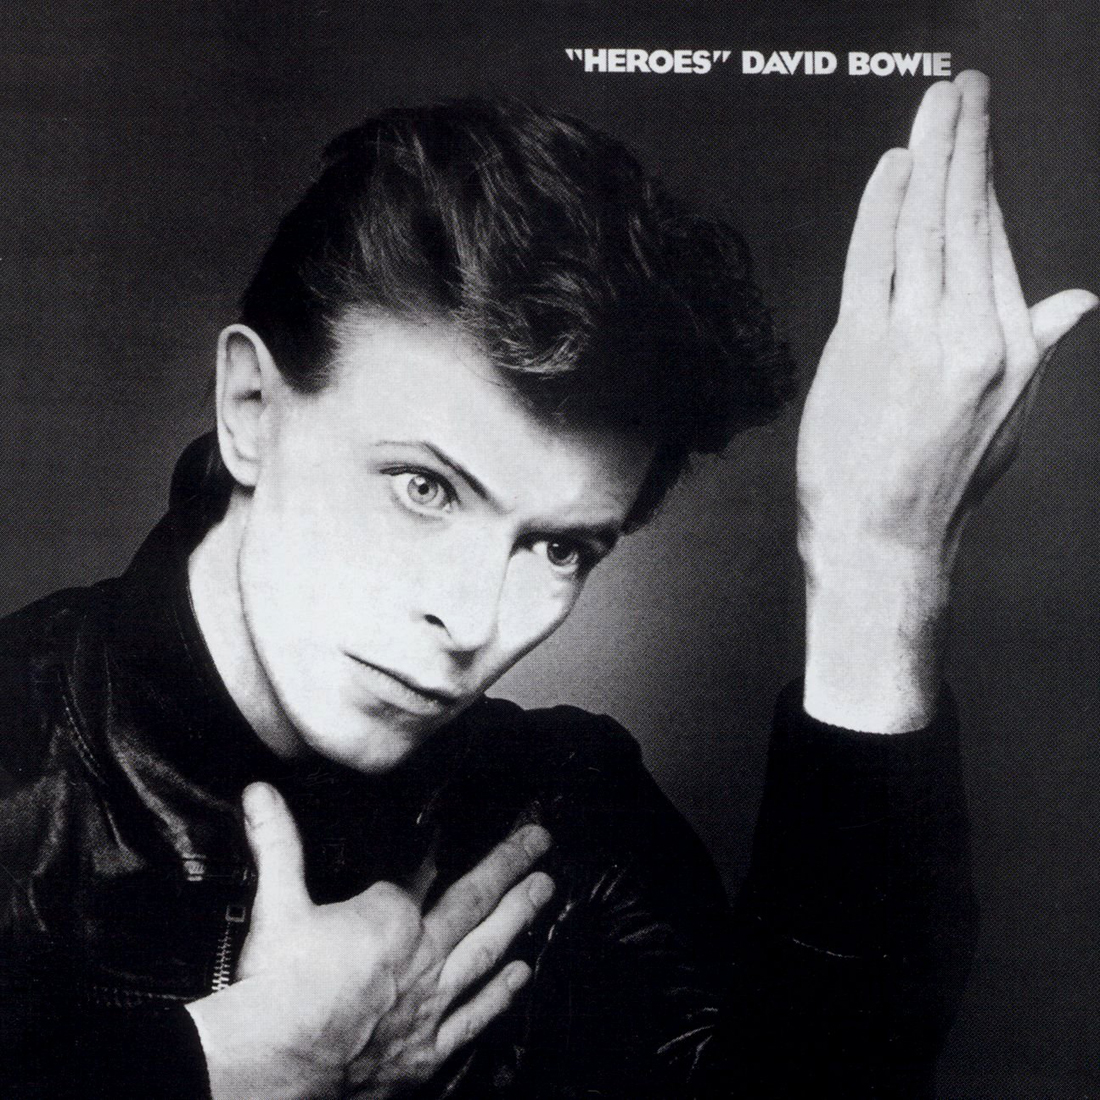 David Bowie "Heroes" LP